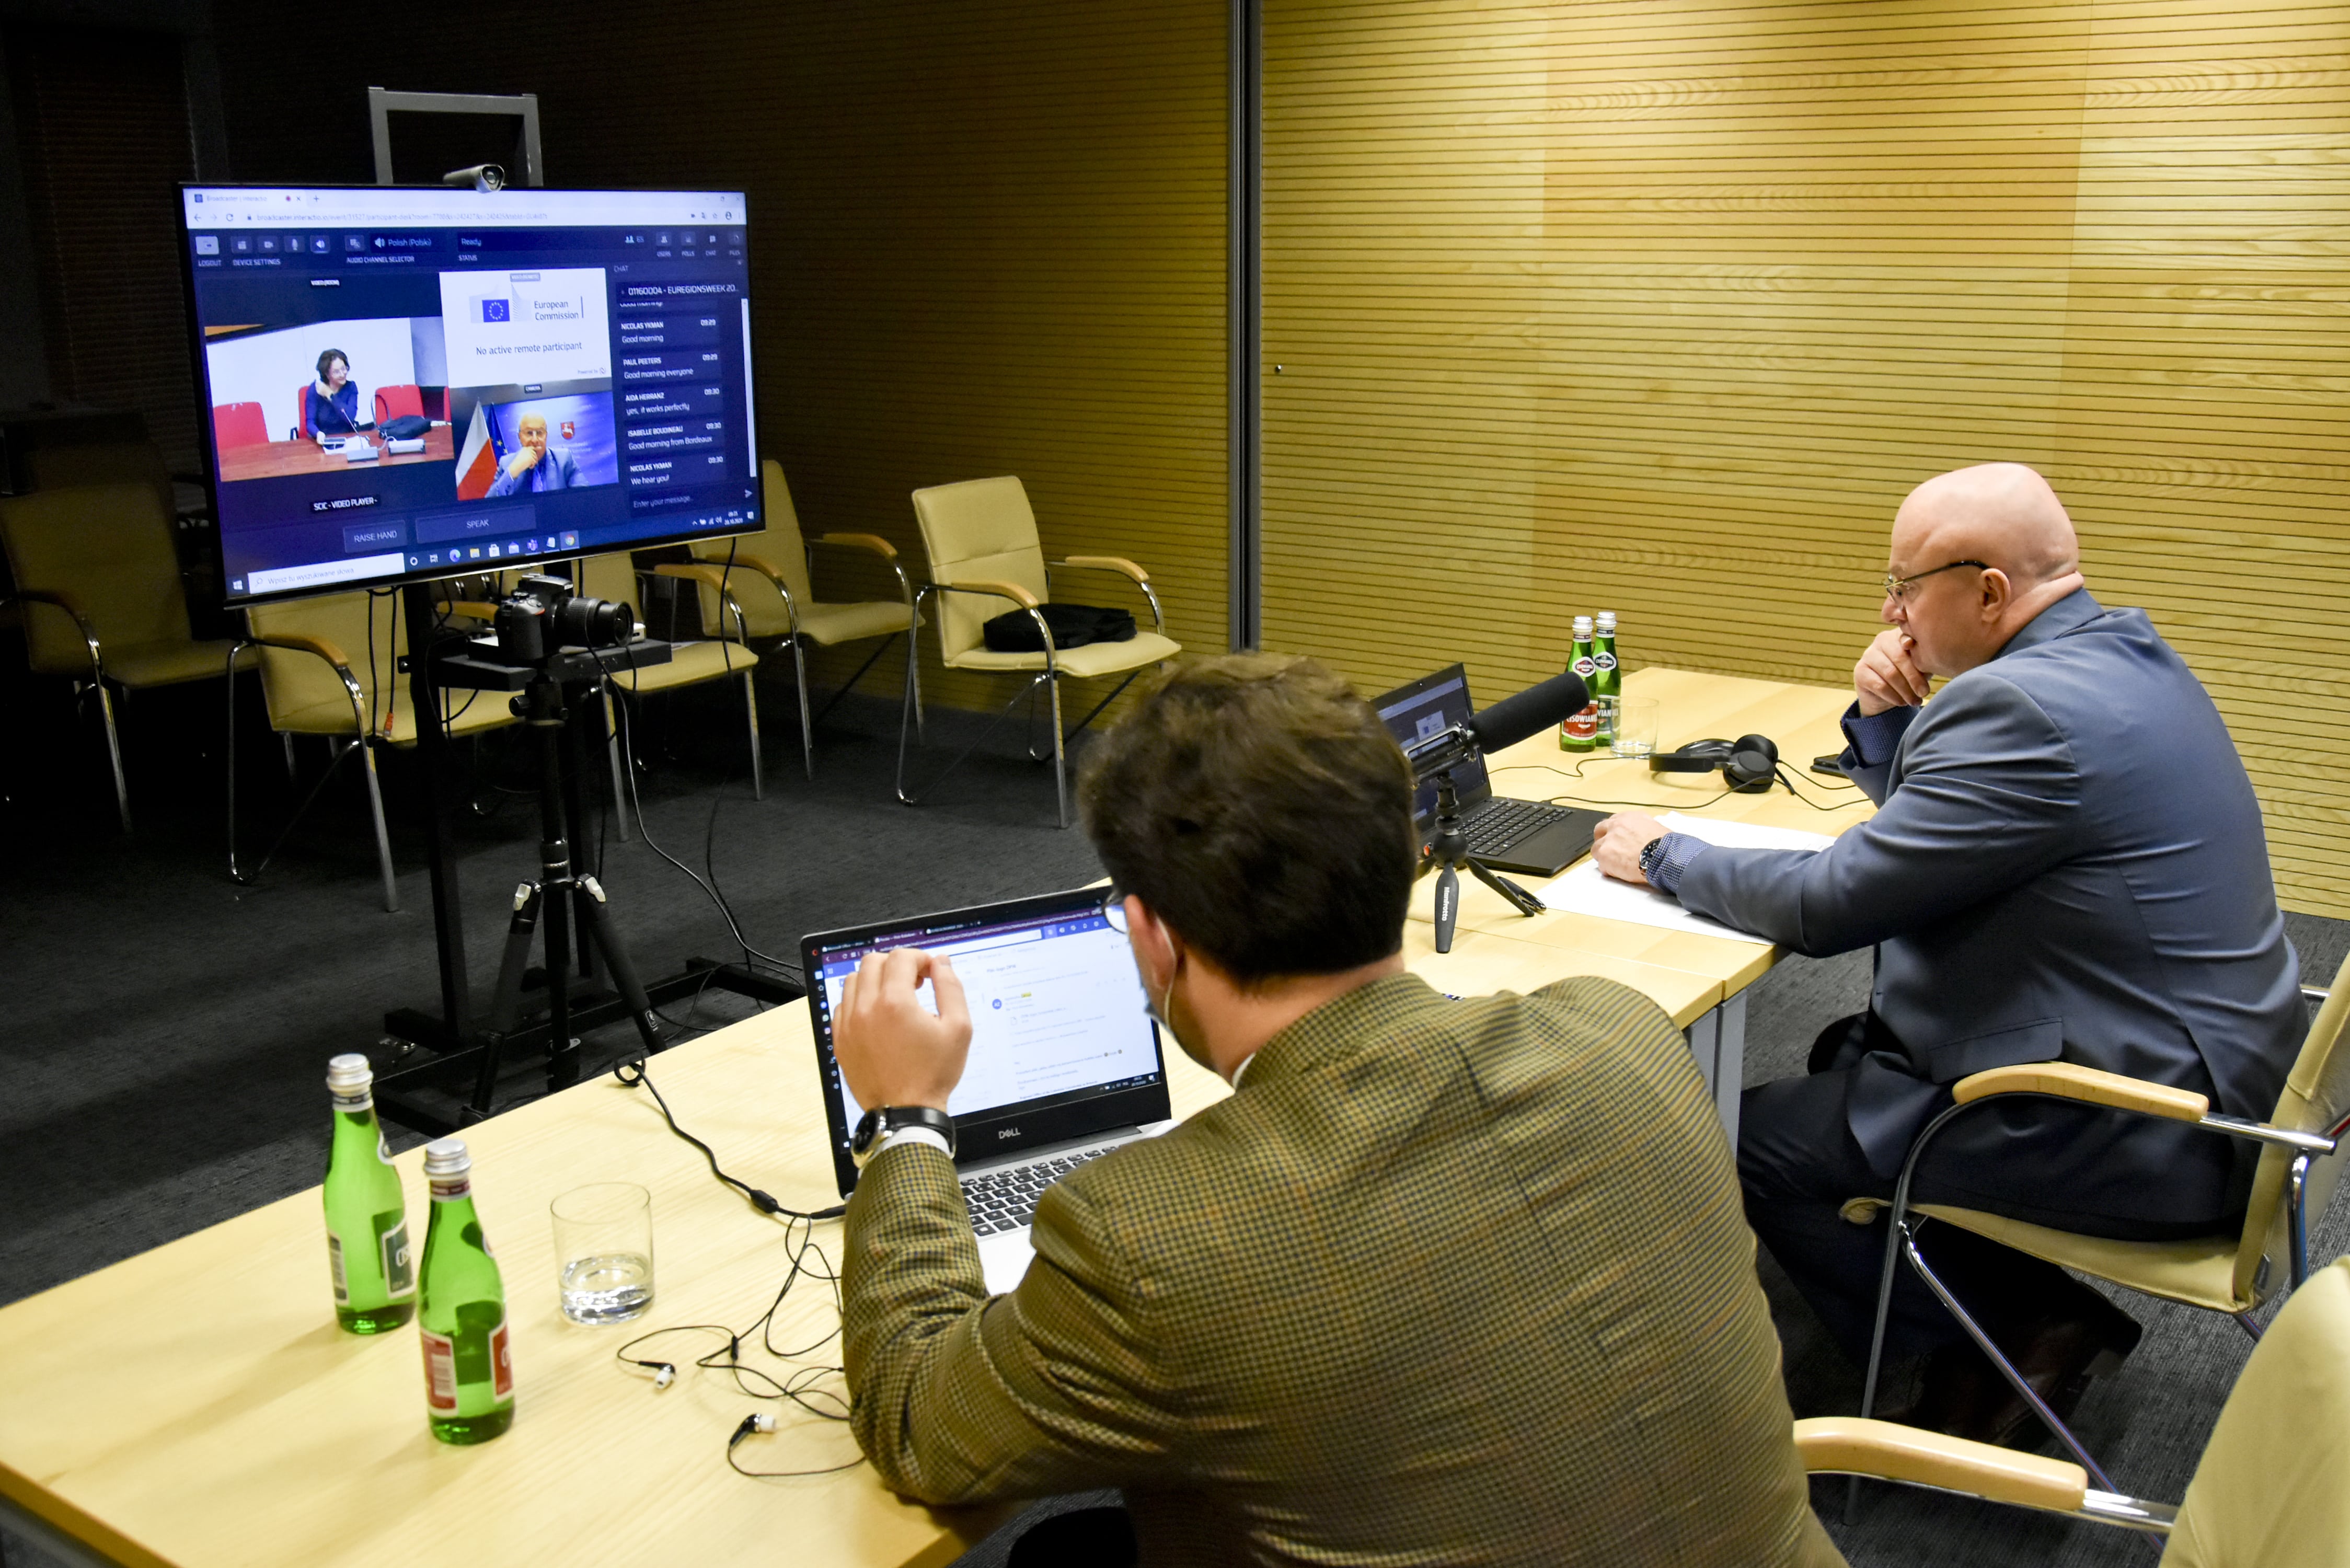 Marszałek Województwa Lubelskiego panelistą w warsztatach Inteligentna Kolej dla Zielonej Odbudowy UE - Zdjęcie główne